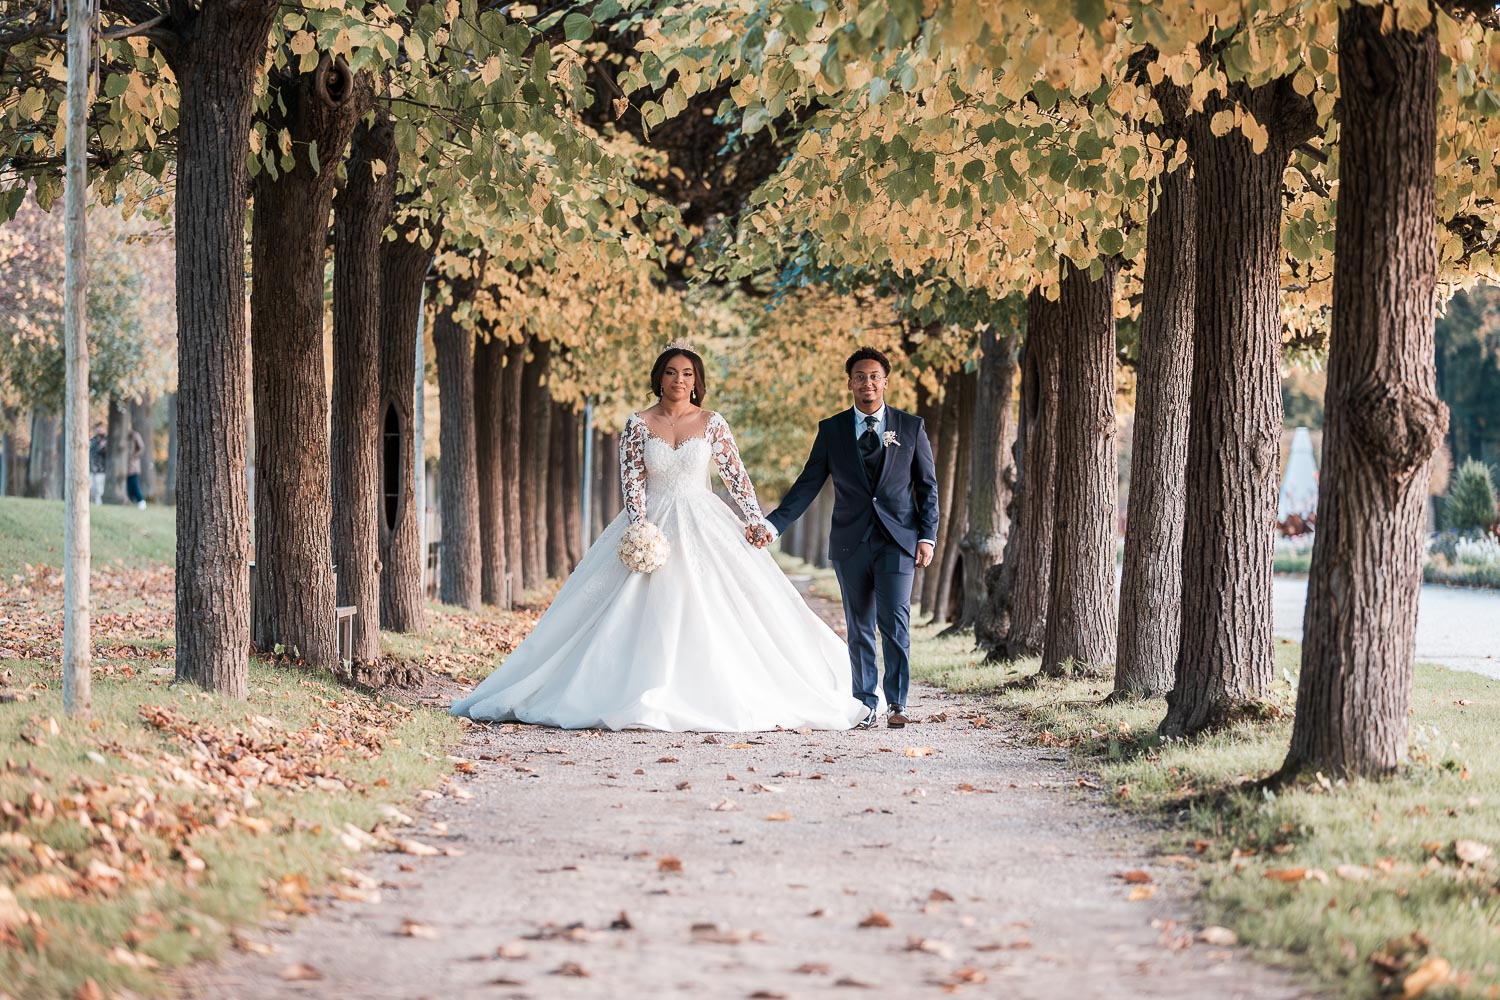 Das hübsche Brautpaar, Hand in Hand, spaziert durch eine kleine Allee im Schlossgarten Augustusburg, die direkt auf den Hochzeitsfotografen zuführt. Von der Perspektive des Fotos aus betrachtet, befindet sich links parallel dazu eine größere Allee.